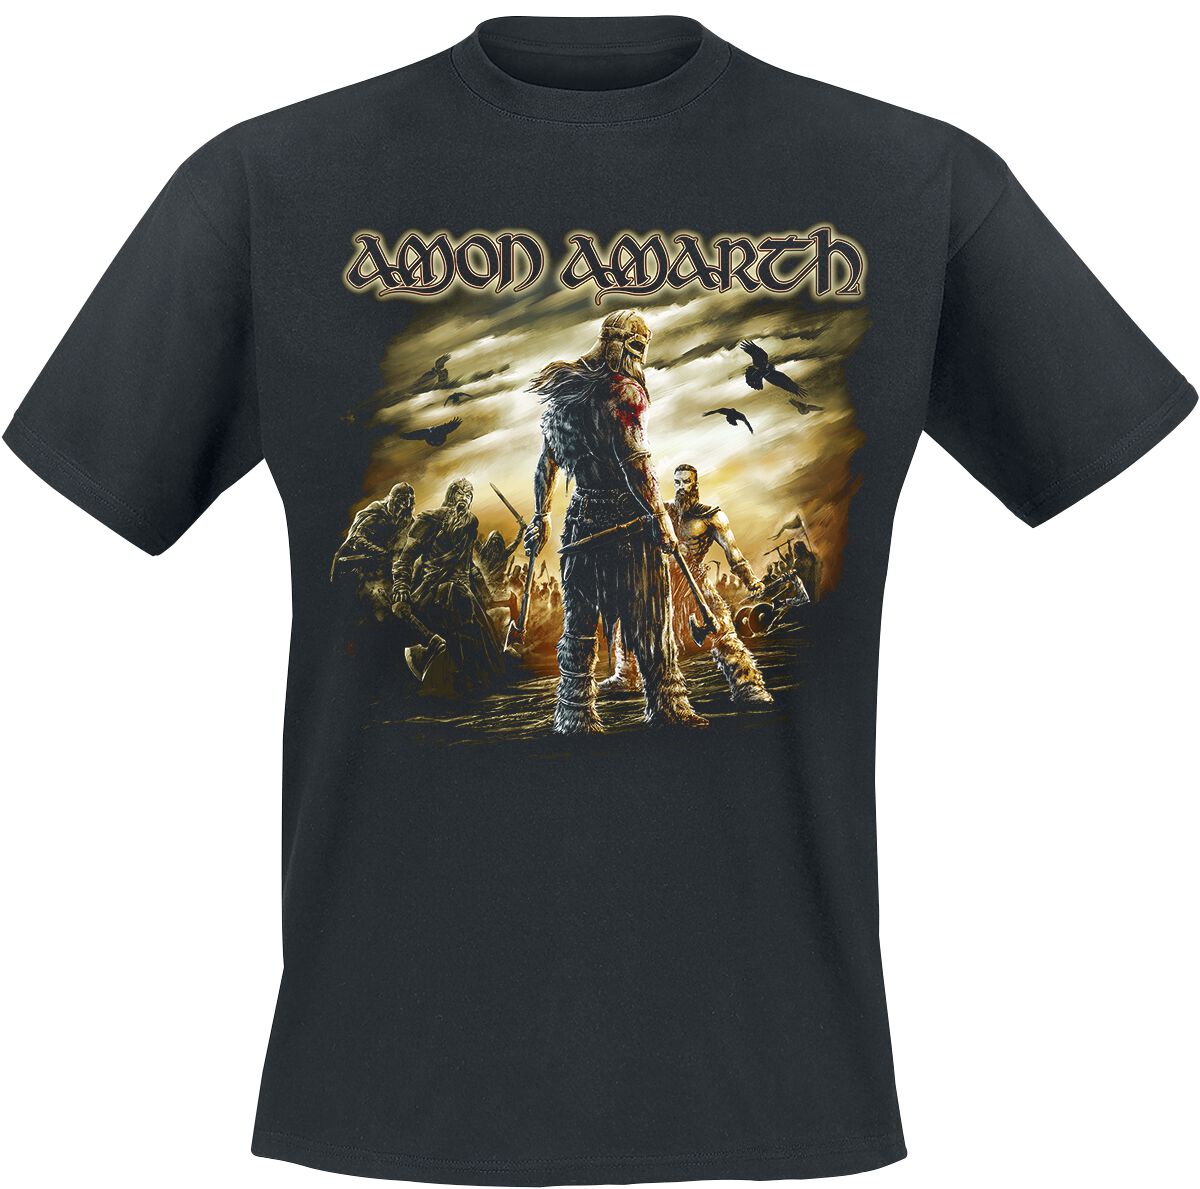 Amon Amarth T-Shirt - Get In The Ring - M bis XL - für Männer - Größe M - schwarz  - Lizenziertes Merchandise!